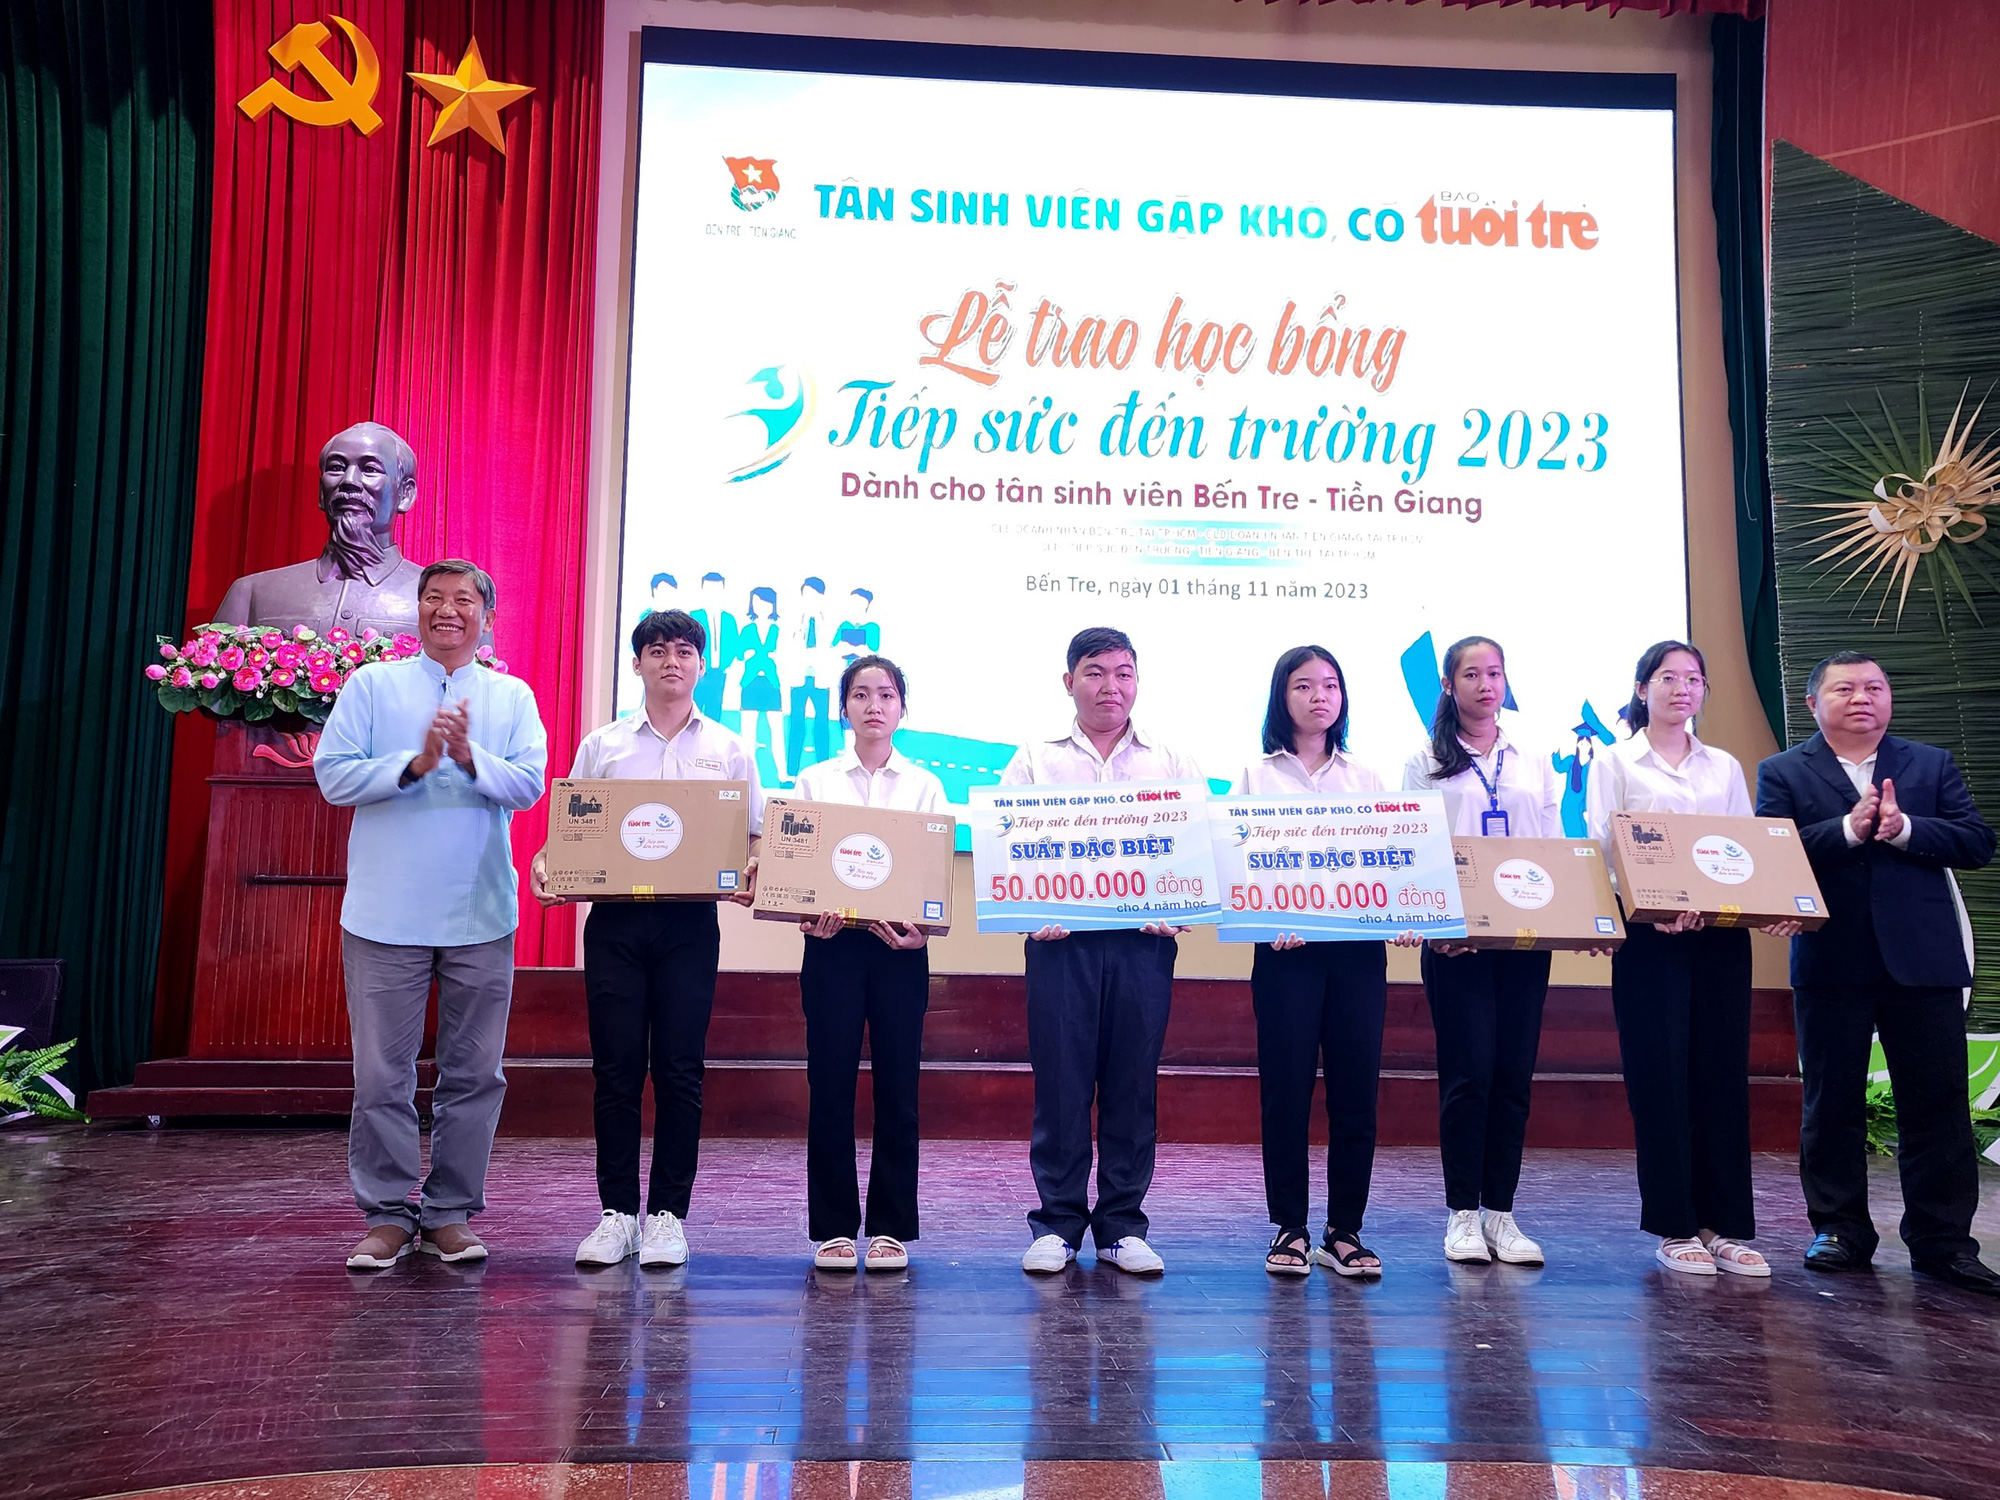 Trong lễ trao học bổng Tiếp sức đến trường sáng 1-11 cho 85 tân sinh viên Bến Tre - Tiền Giang, Nguyễn Phương Vi đã được nhận suất học bổng đặc biệt trị giá 50 triệu đồng/ suốt 4 năm học - Ảnh: HOÀI THƯƠNG